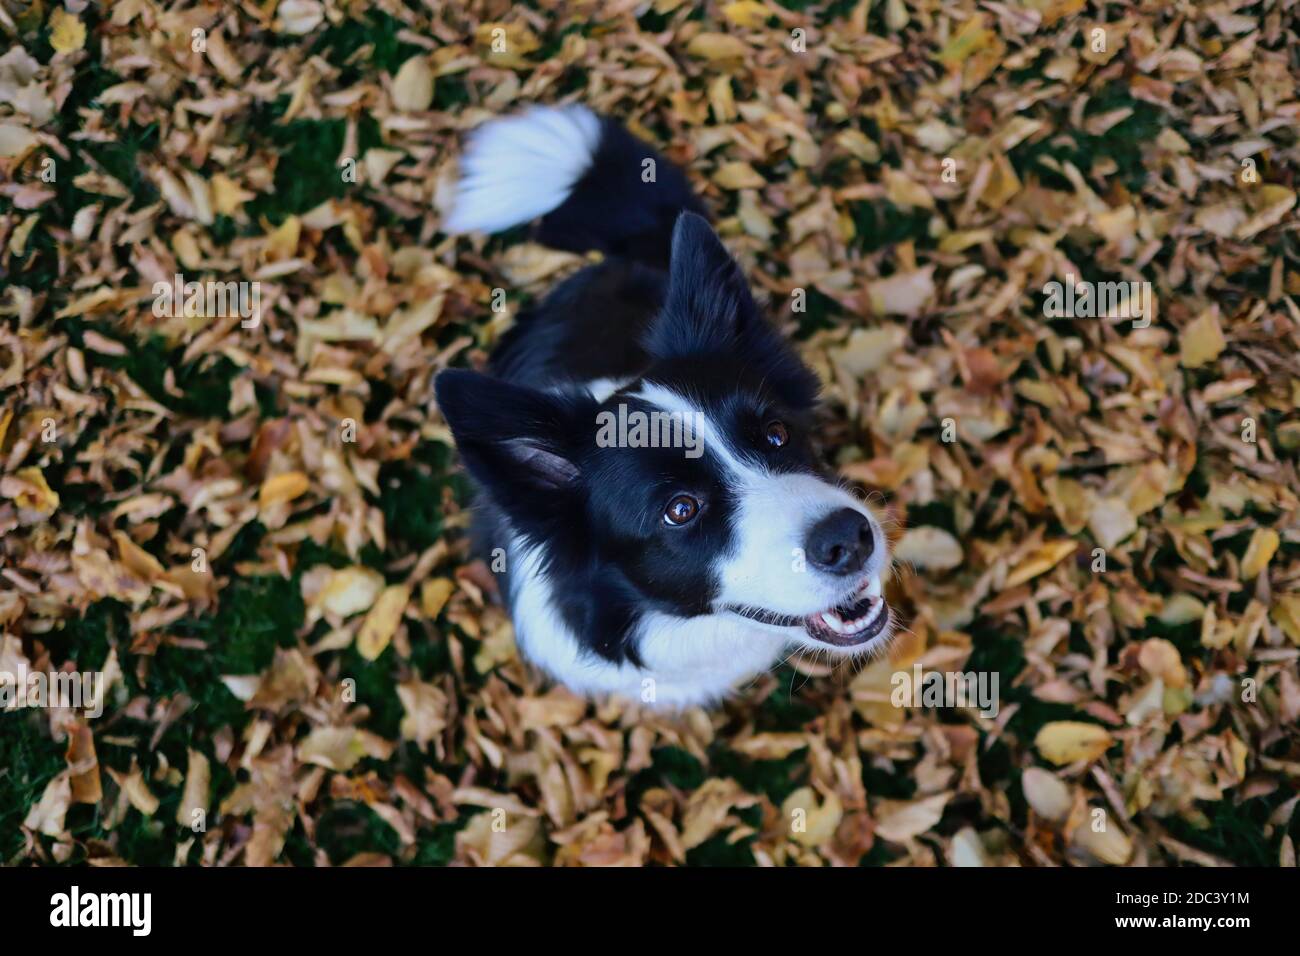 Draufsicht auf lächelnde Border Collie Sitting Down on Fallen Autumn Leaves in der Herbstsaison. Top-Down-Bild von Schwarz und Weiß Happy Dog. Stockfoto